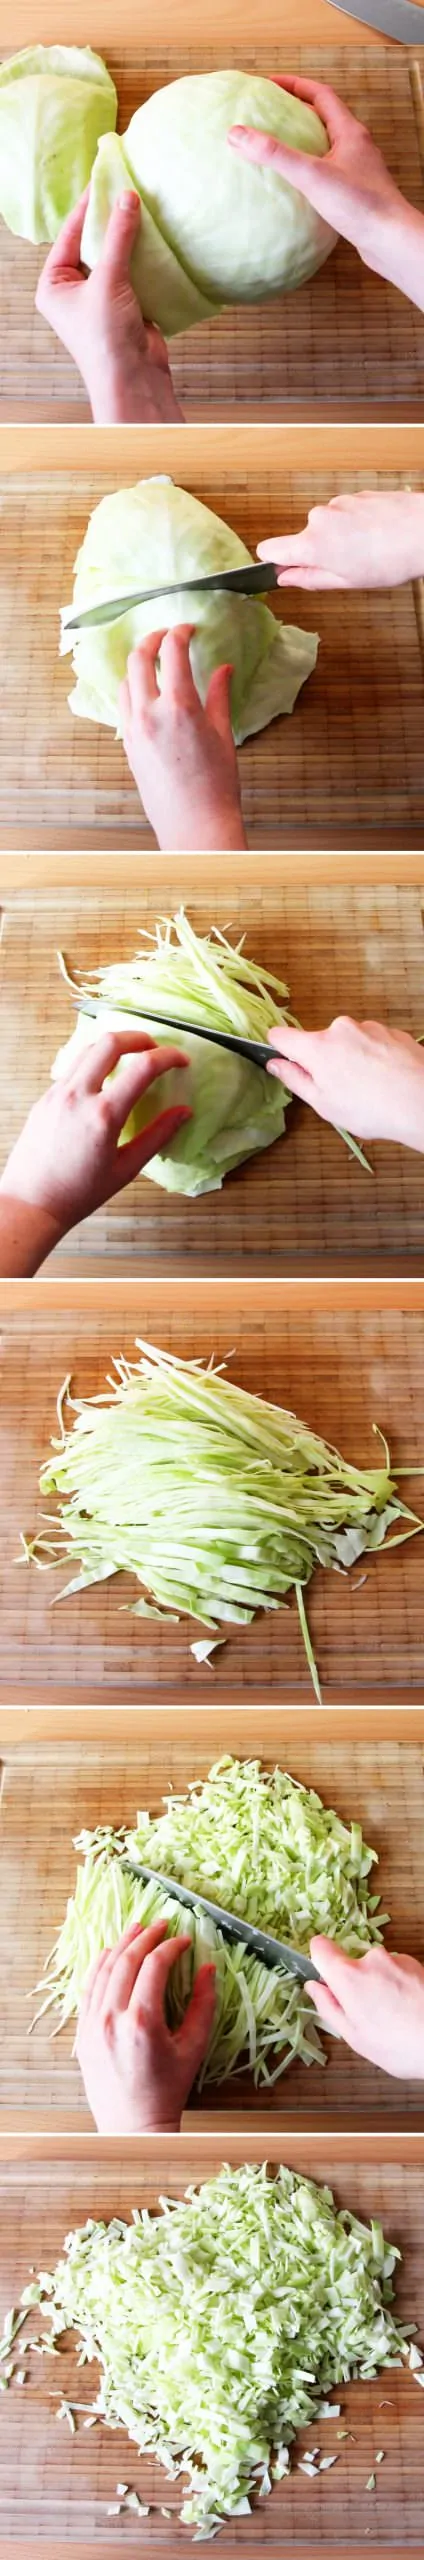 Grundrezept Okonomiyaki Schritt 2 Kohl schneiden